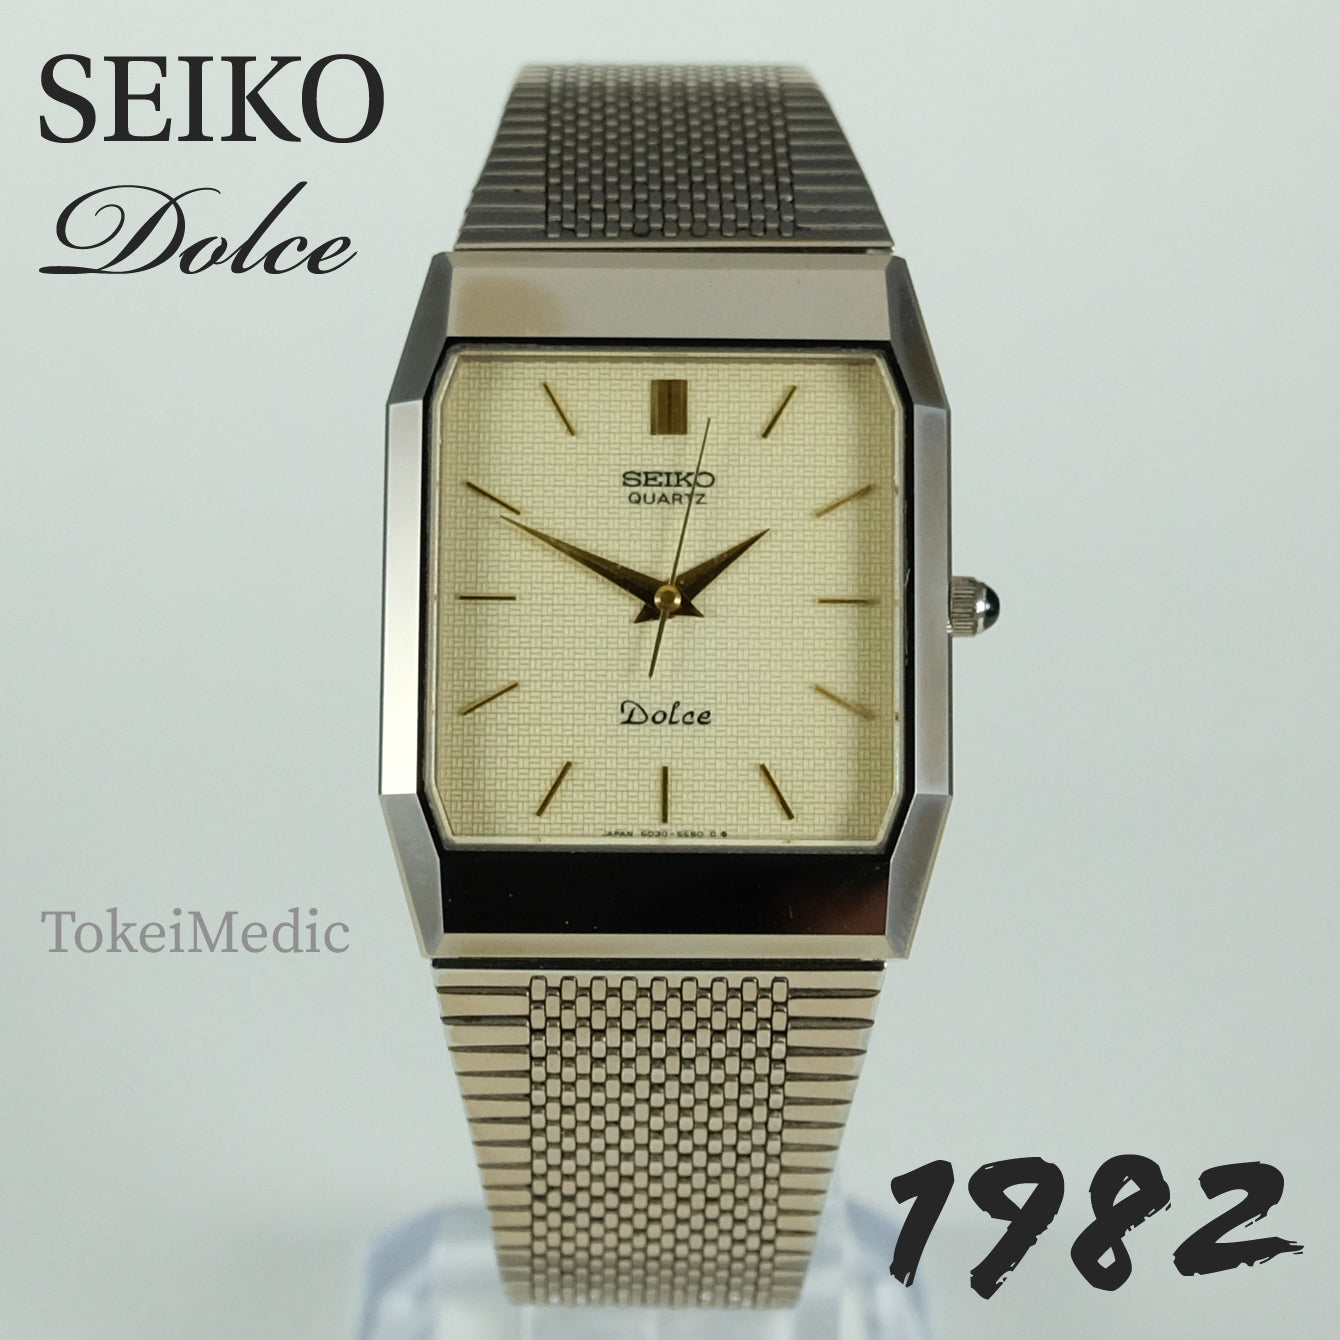 1982 Seiko Dolce 6030-5530